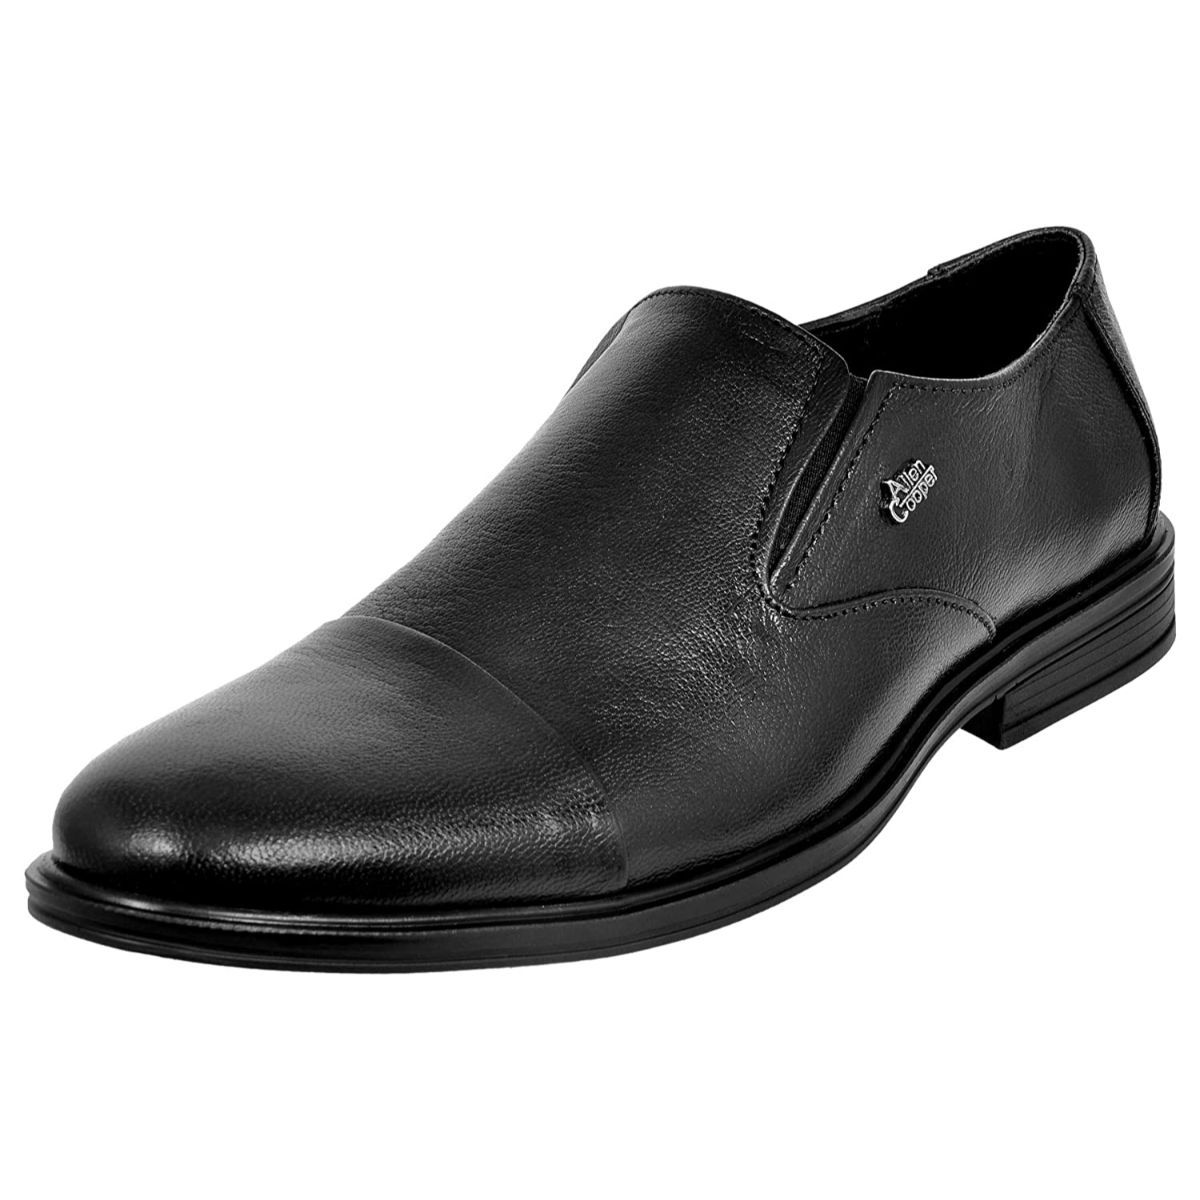 Allen Cooper Black Formal Shoes For Men - 9